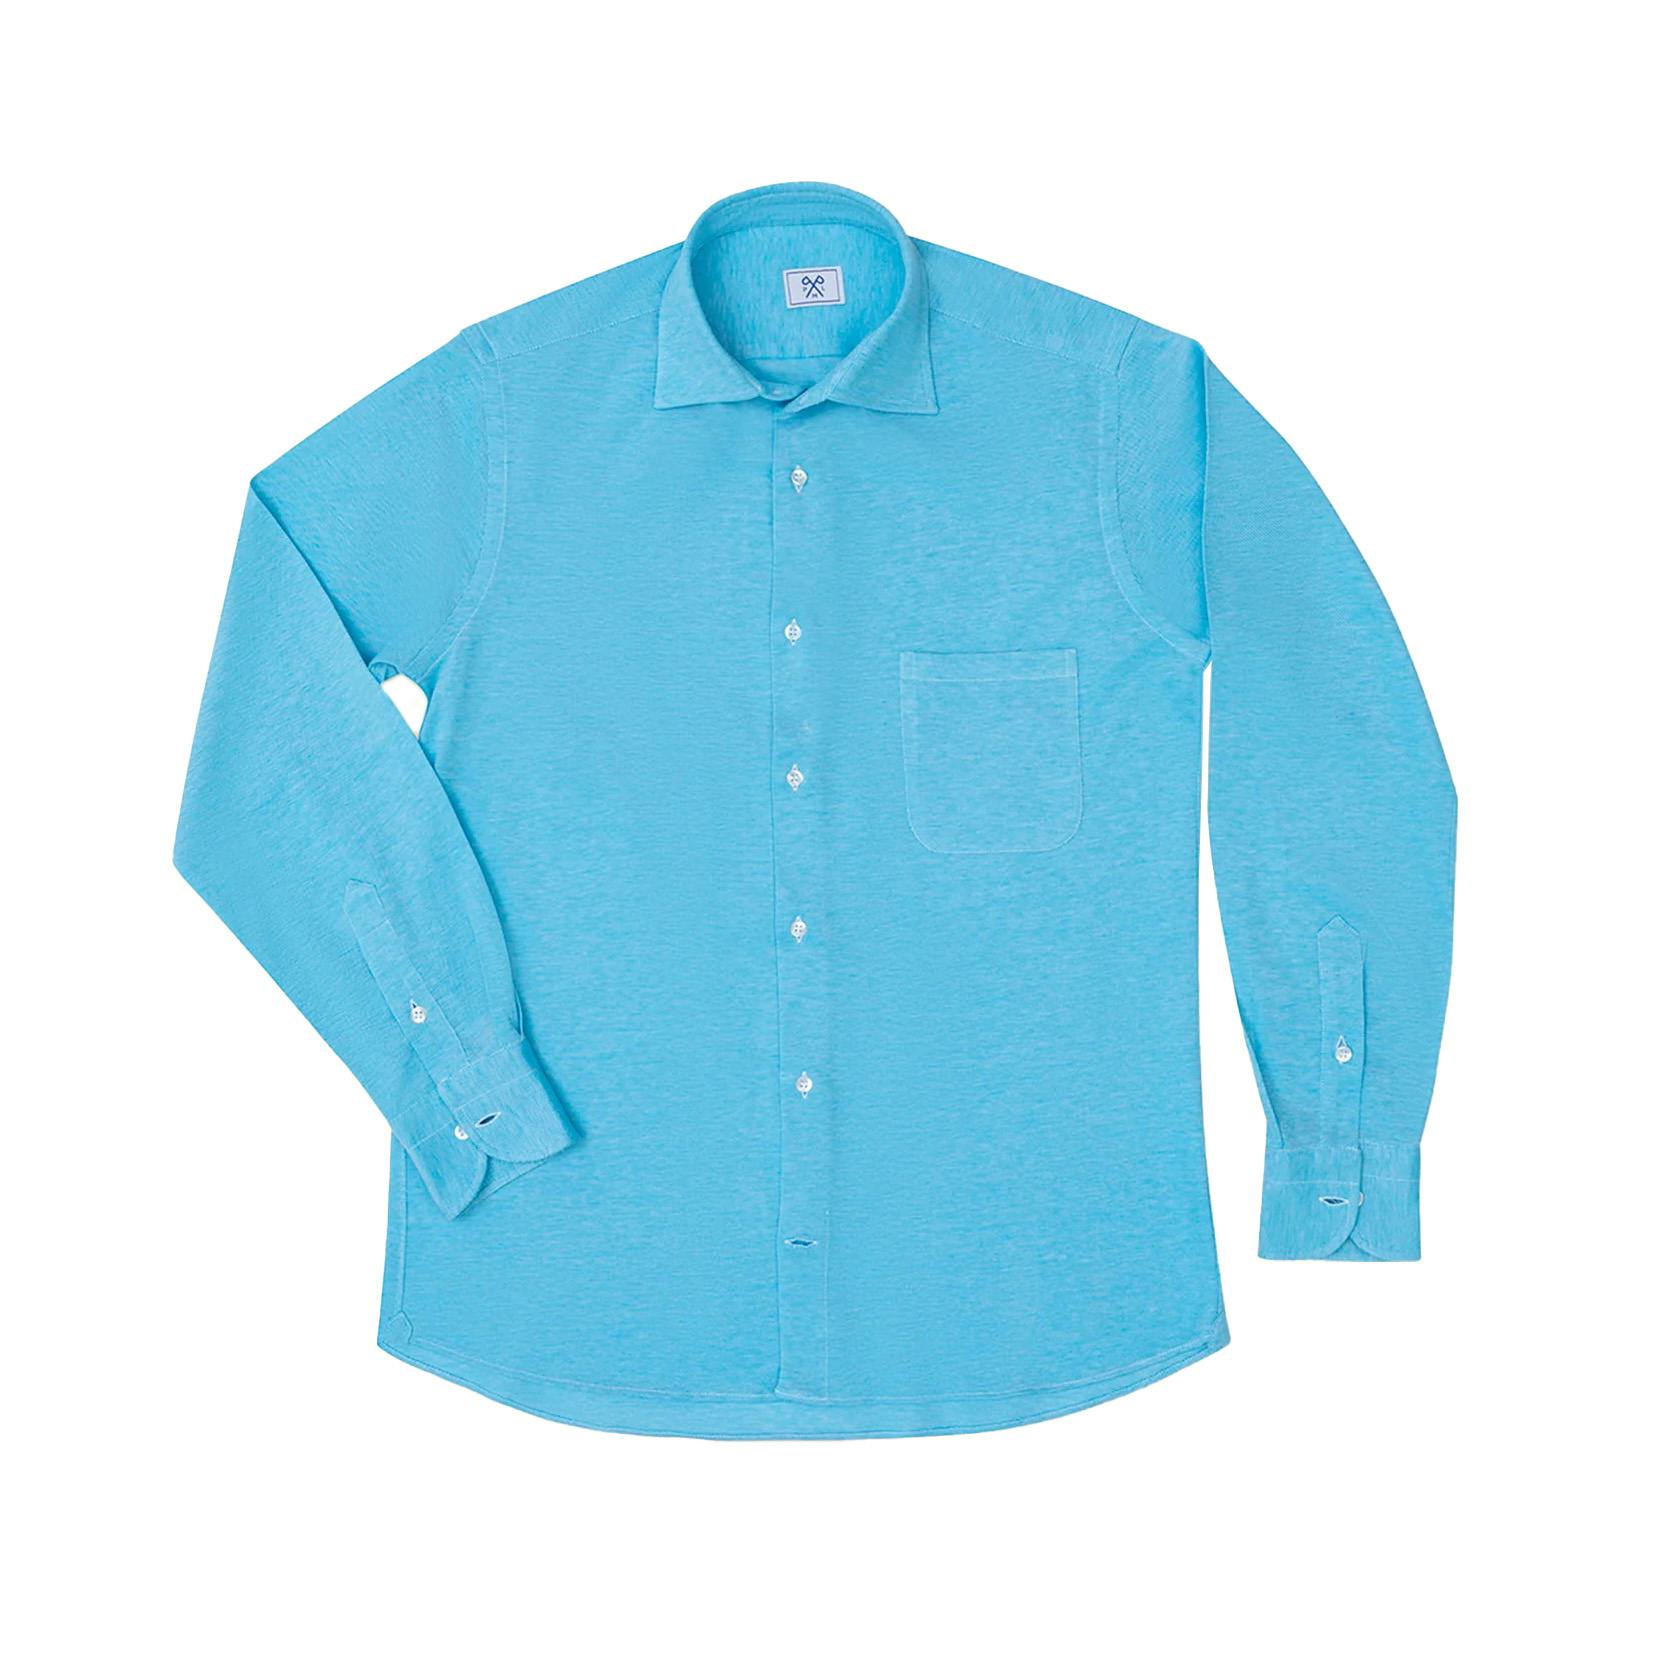 PML Capri Shirt – Turquoise